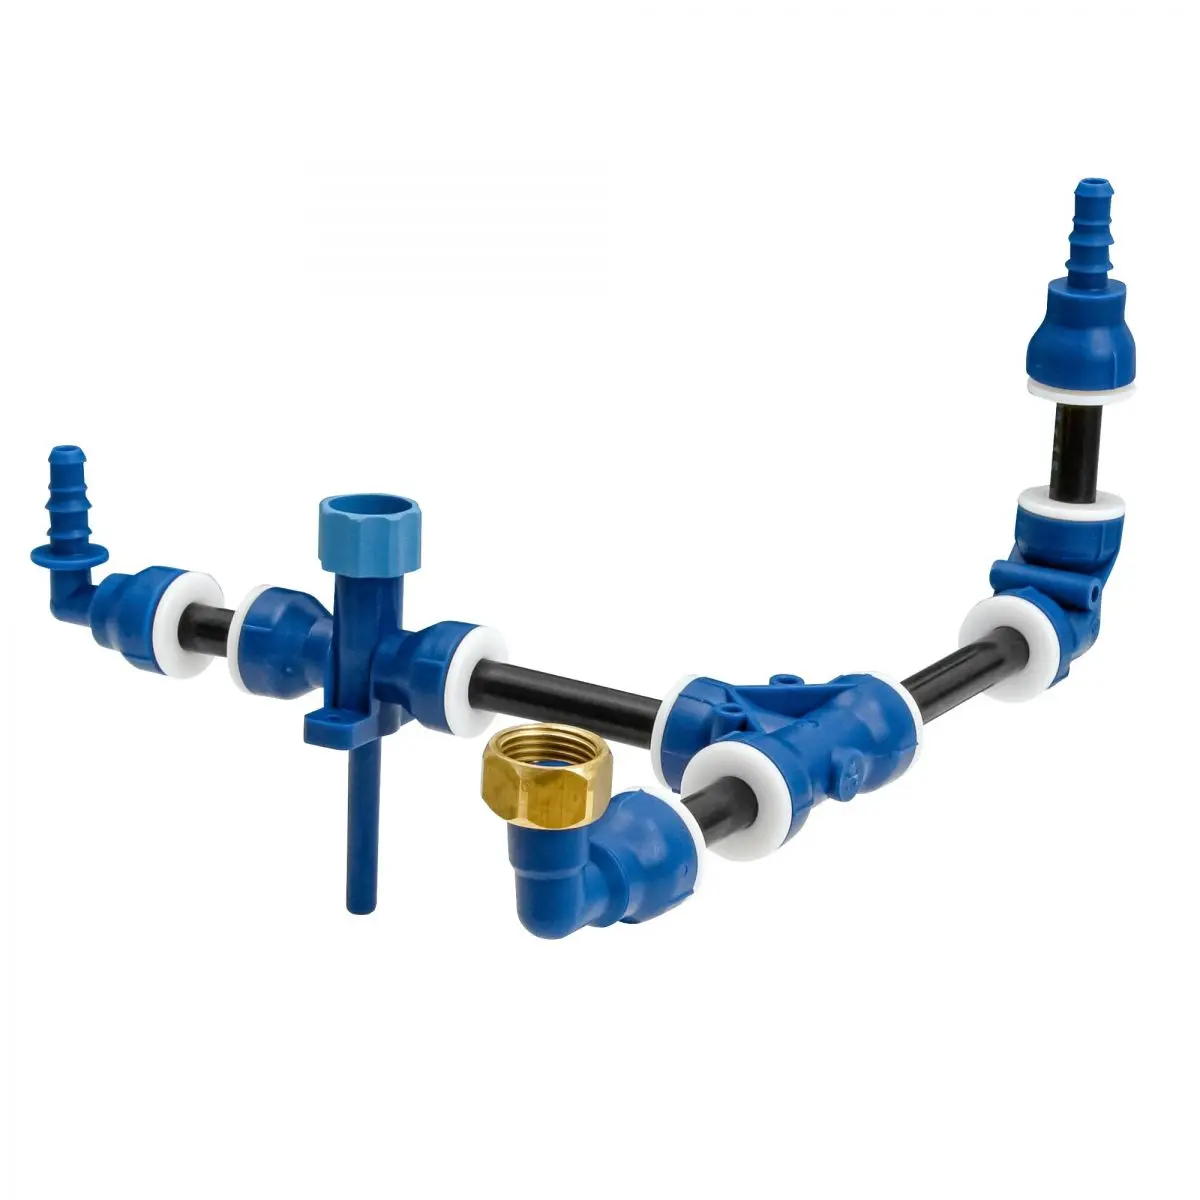 priamy konektor - systém Uniquick pre čerstvú vodu